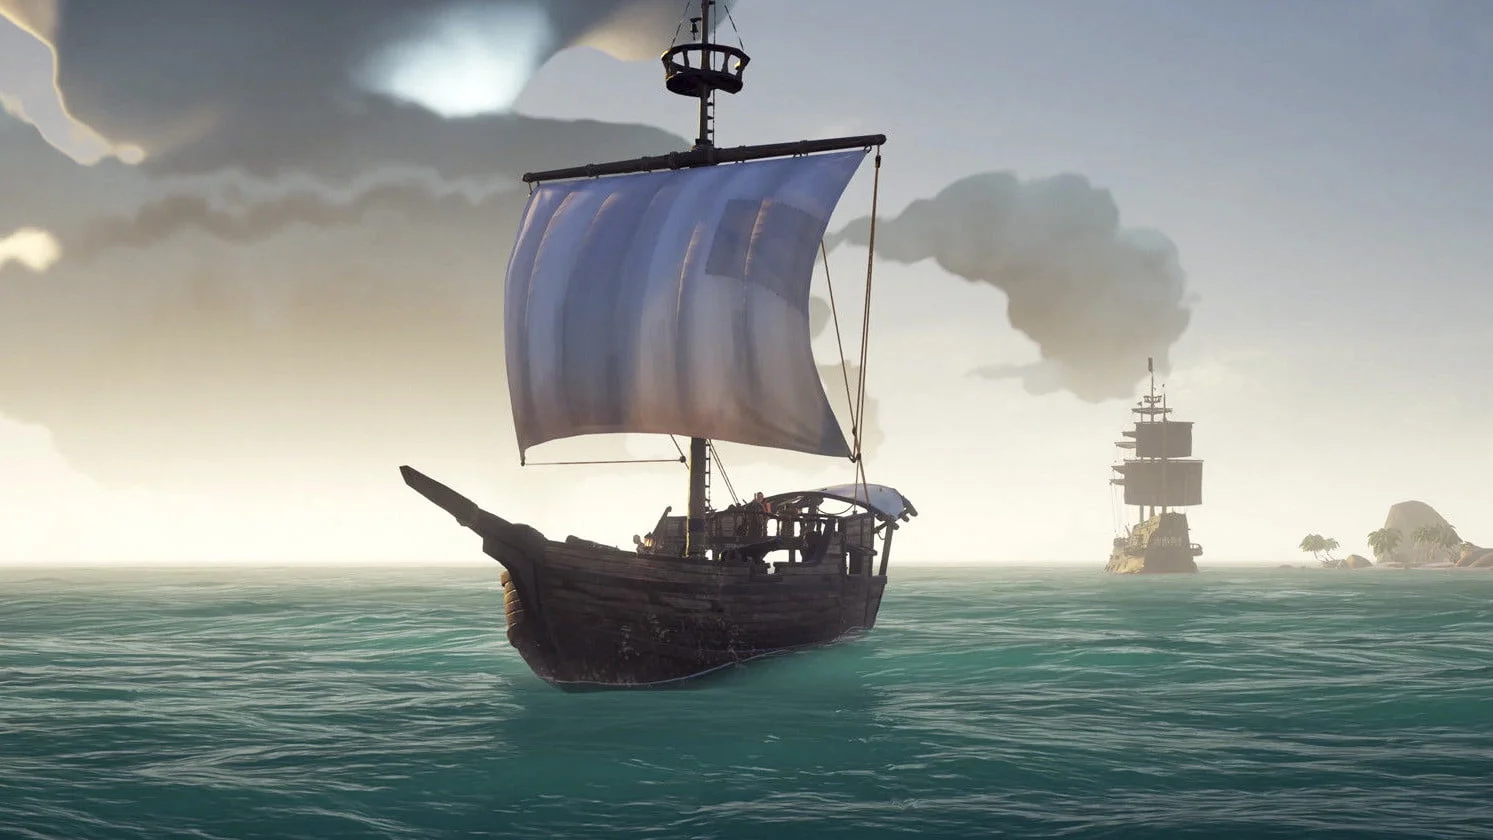 Гайд. Как кастомизировать персонажа и корабль в Sea of Thieves - фото 3